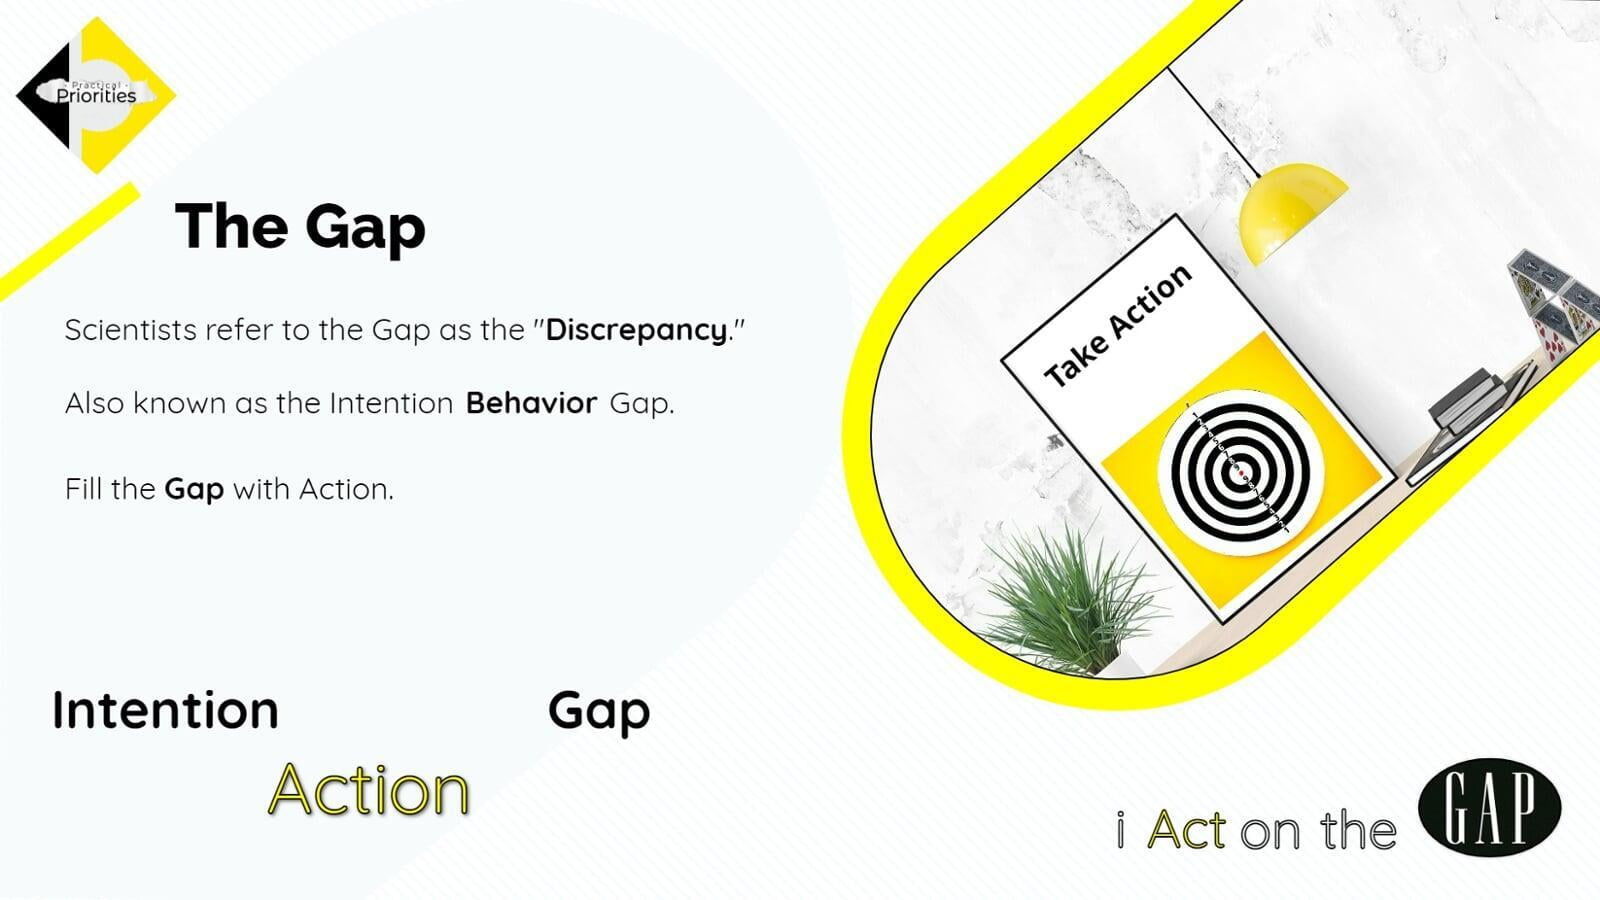 Take Action, Bullseye, Yellow target.  Discrepancy referred to as "the Gap."